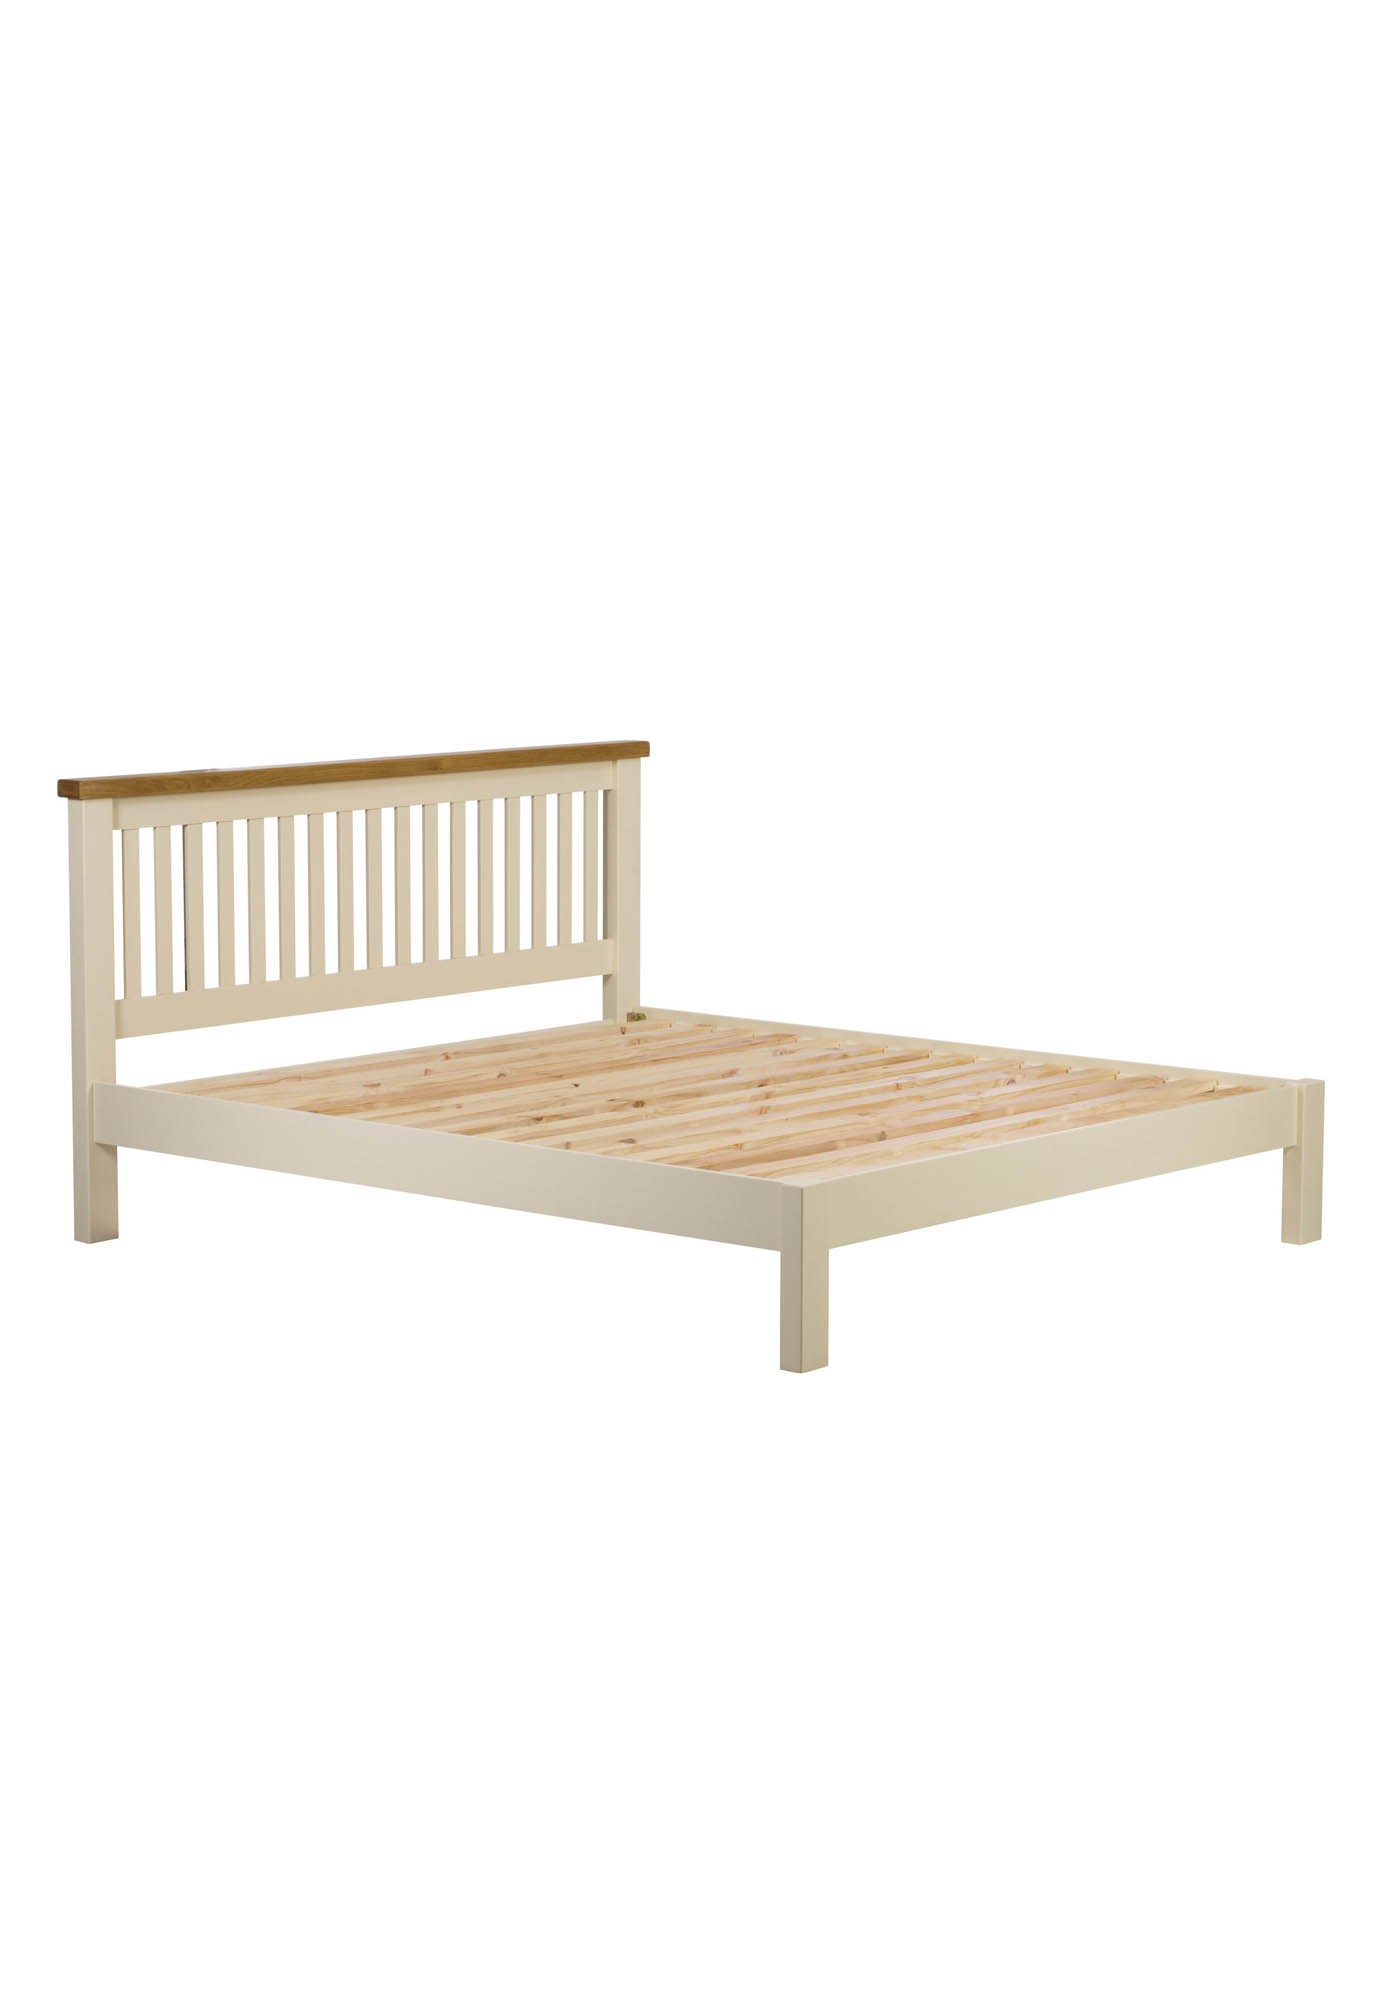 Oak 5ft King Bed Frame, Cream Wooden Bed Frame